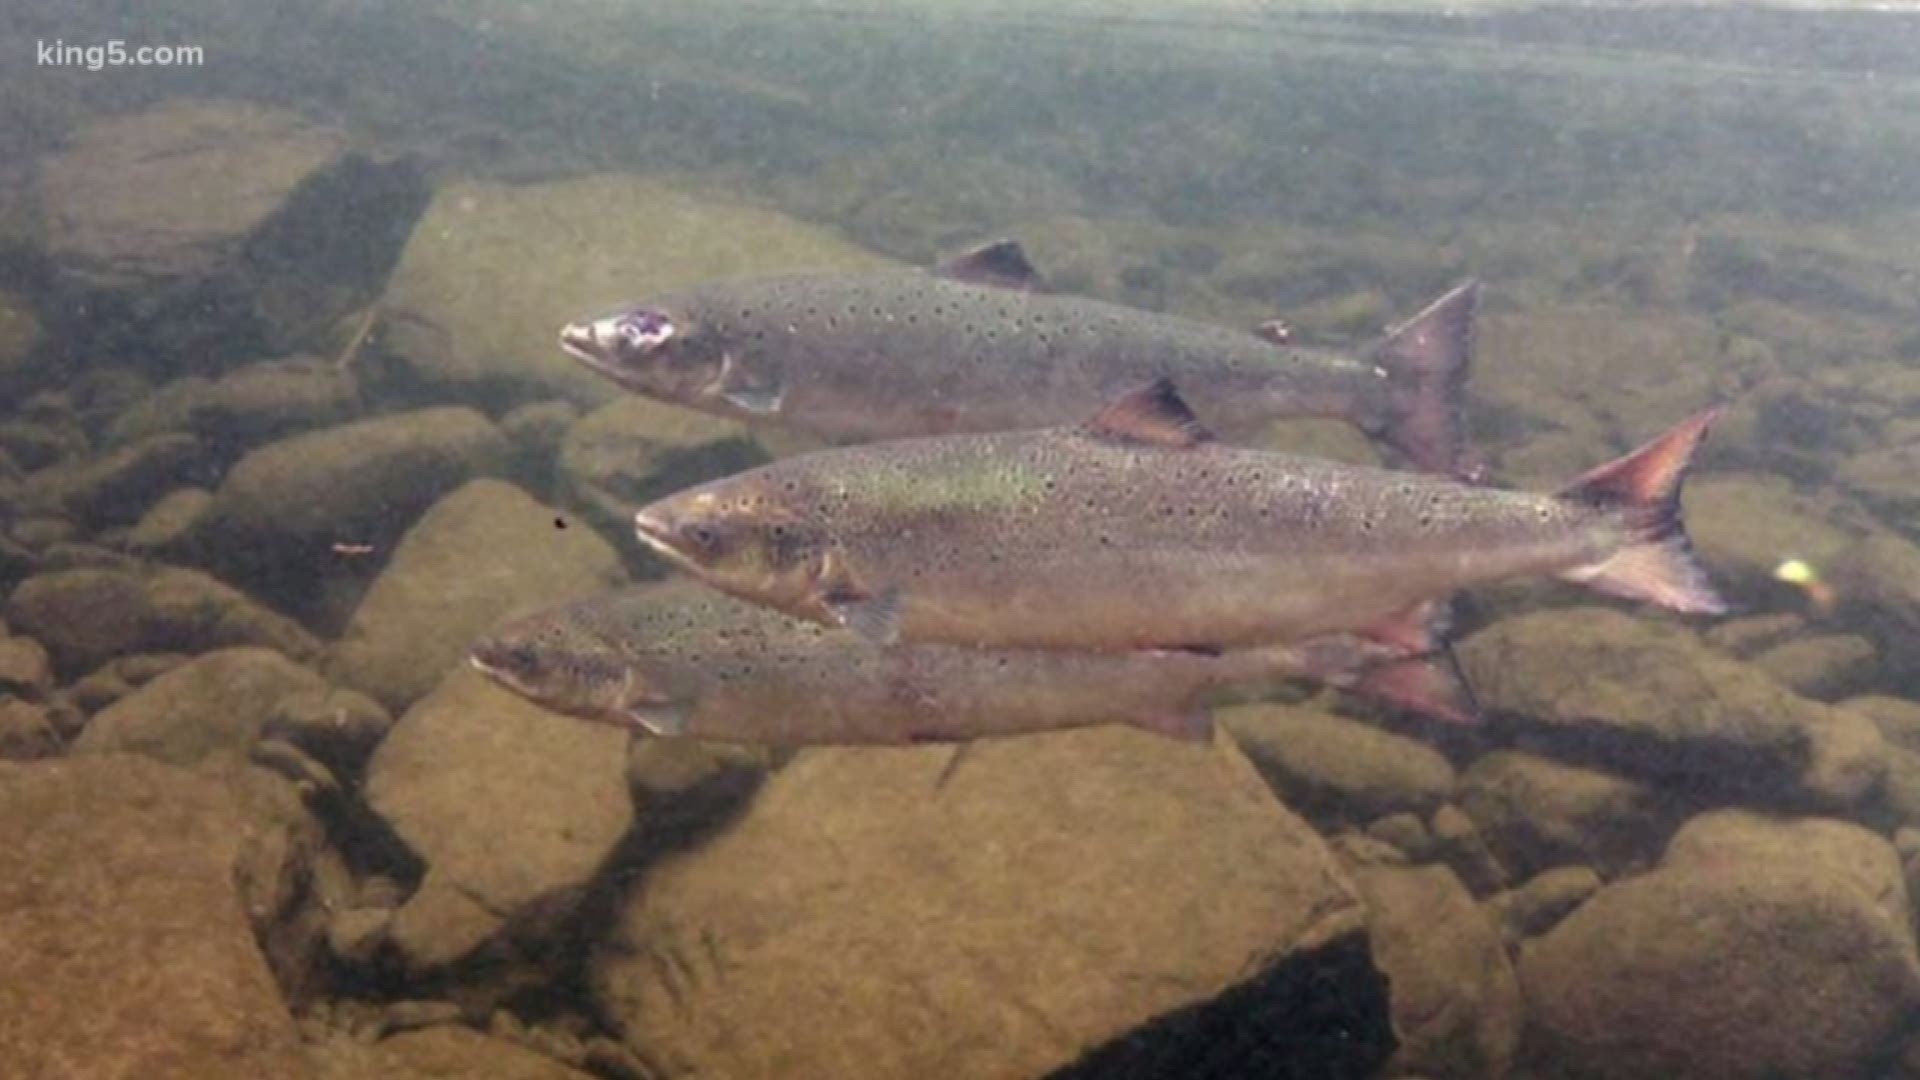 An international forum focused on saving salmon is meeting this week in Seattle.